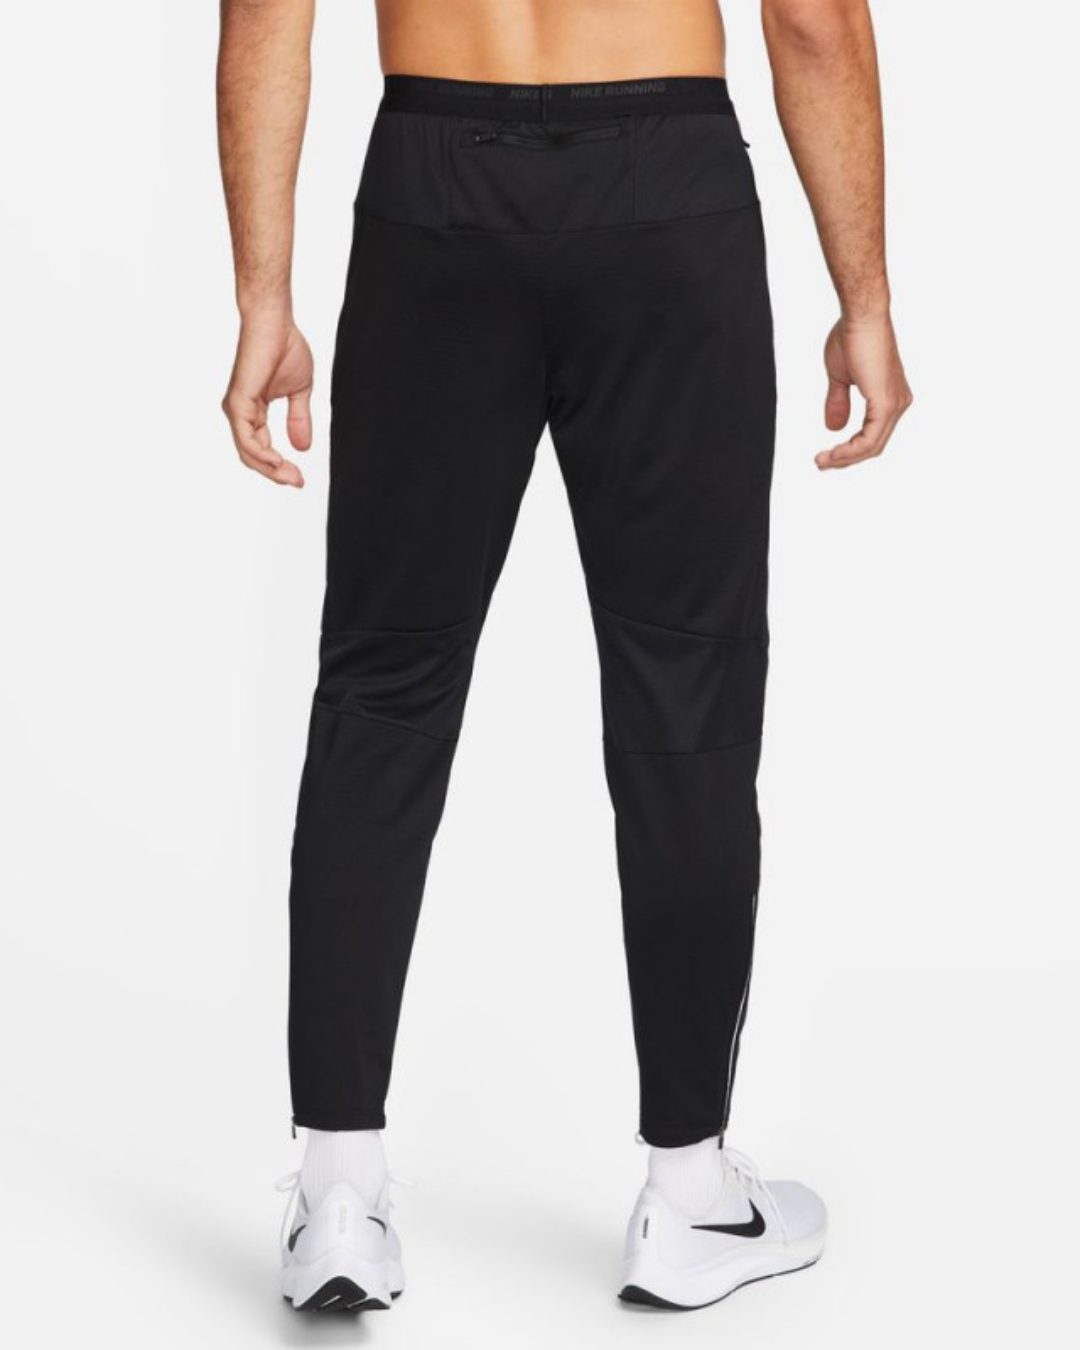 Pantalon Nike Dri-Fit - Noir